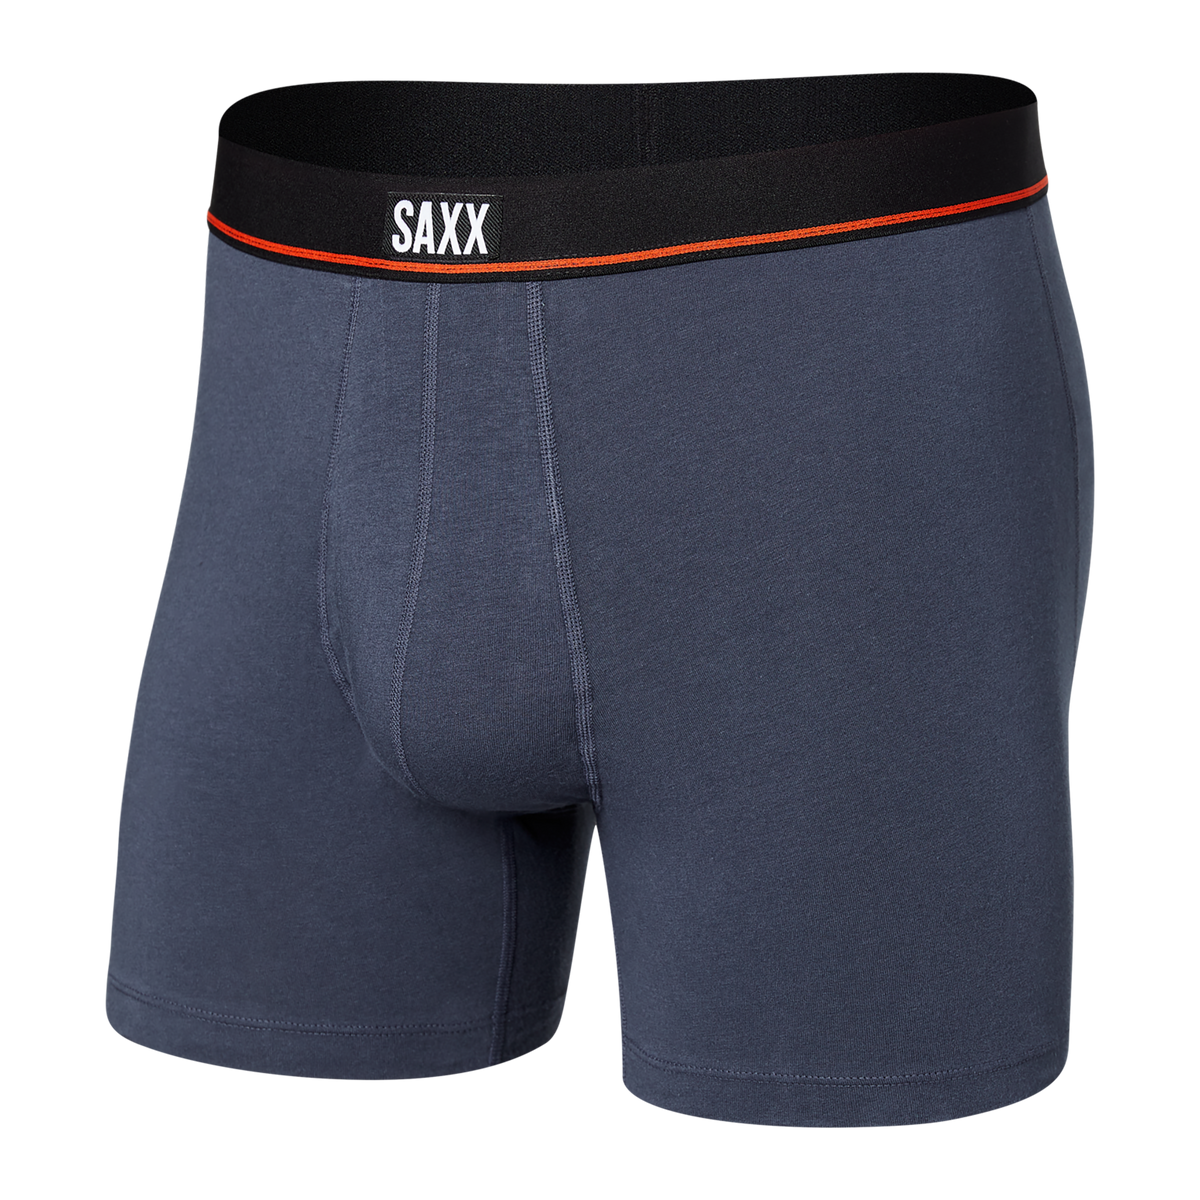 SAXX Non-stop Stretch Cotton - SALE